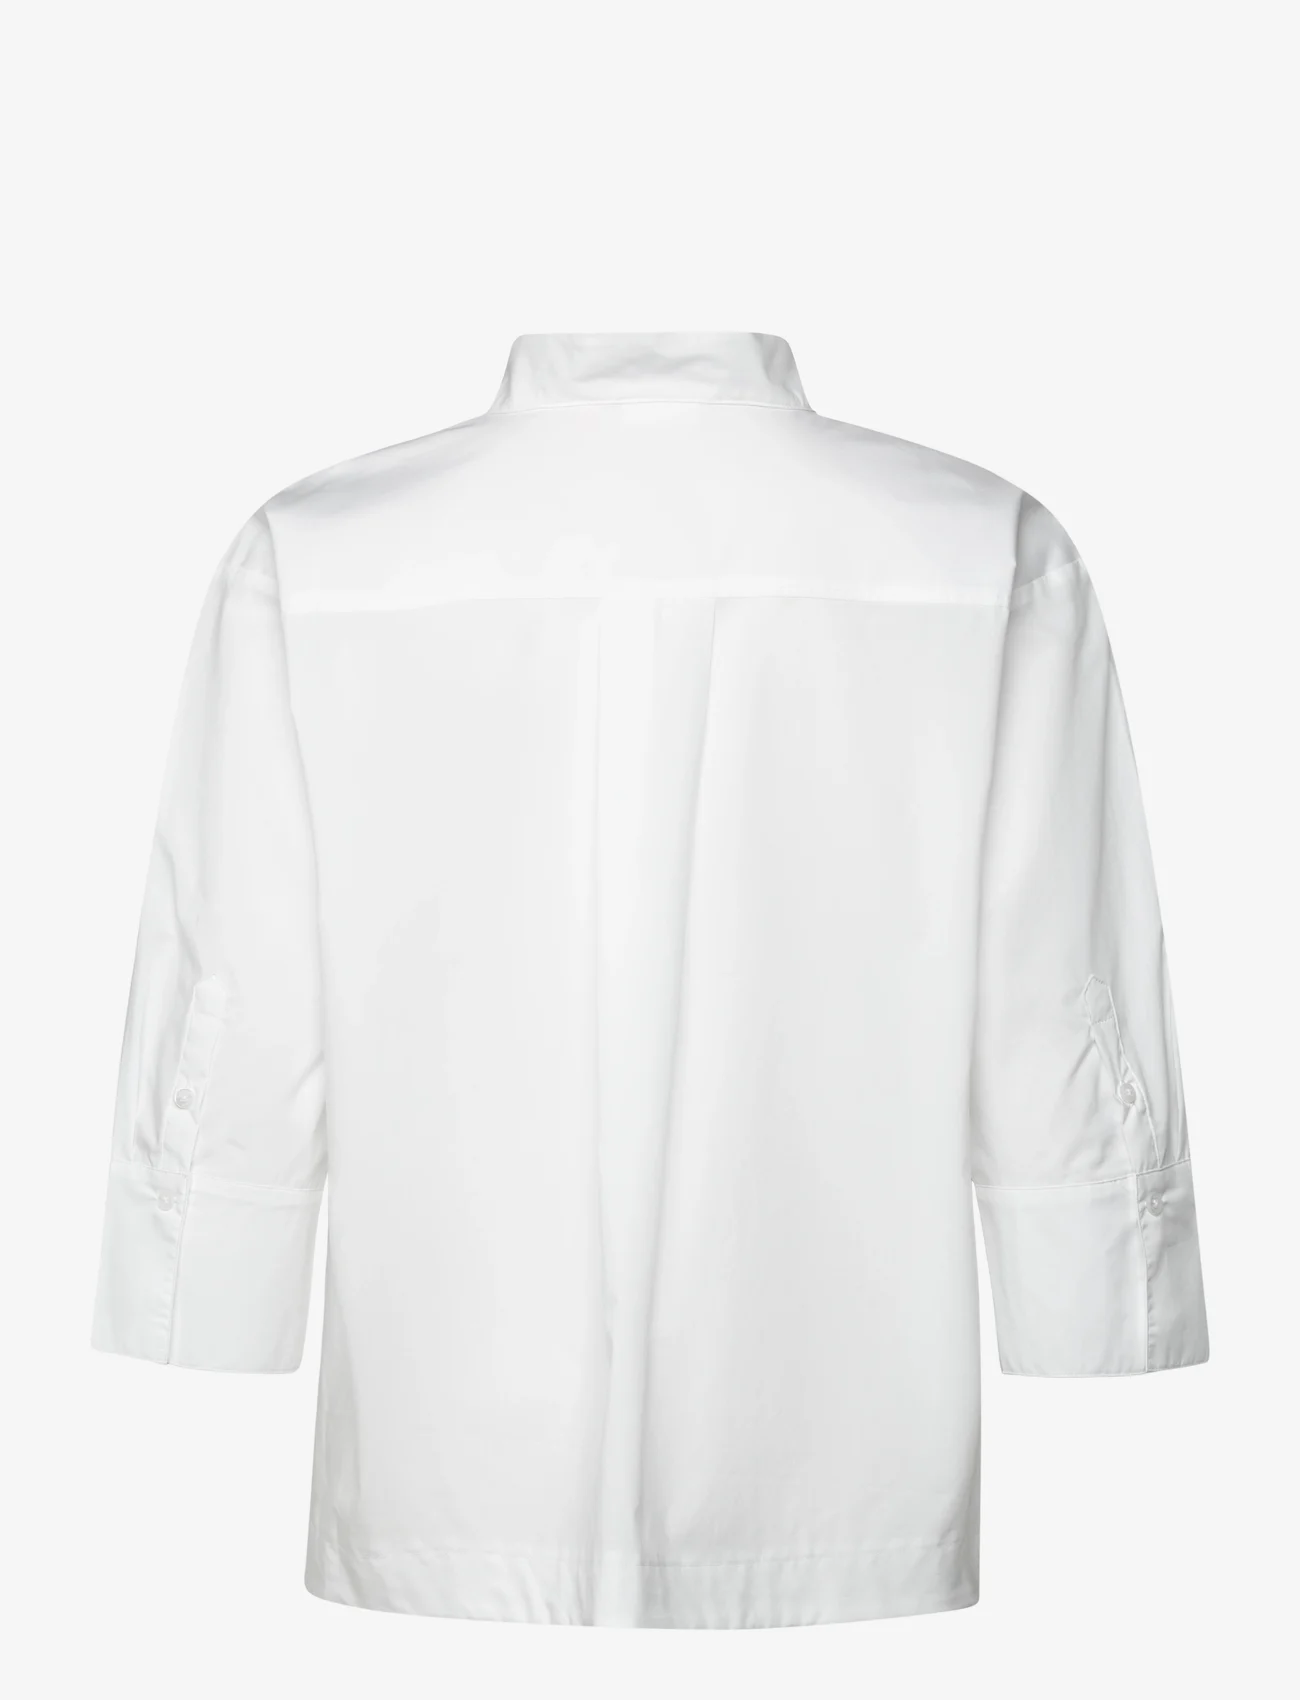 Gerry Weber Edition - BLOUSE 3/4 SLEEVE - marškiniai ilgomis rankovėmis - white/white - 1